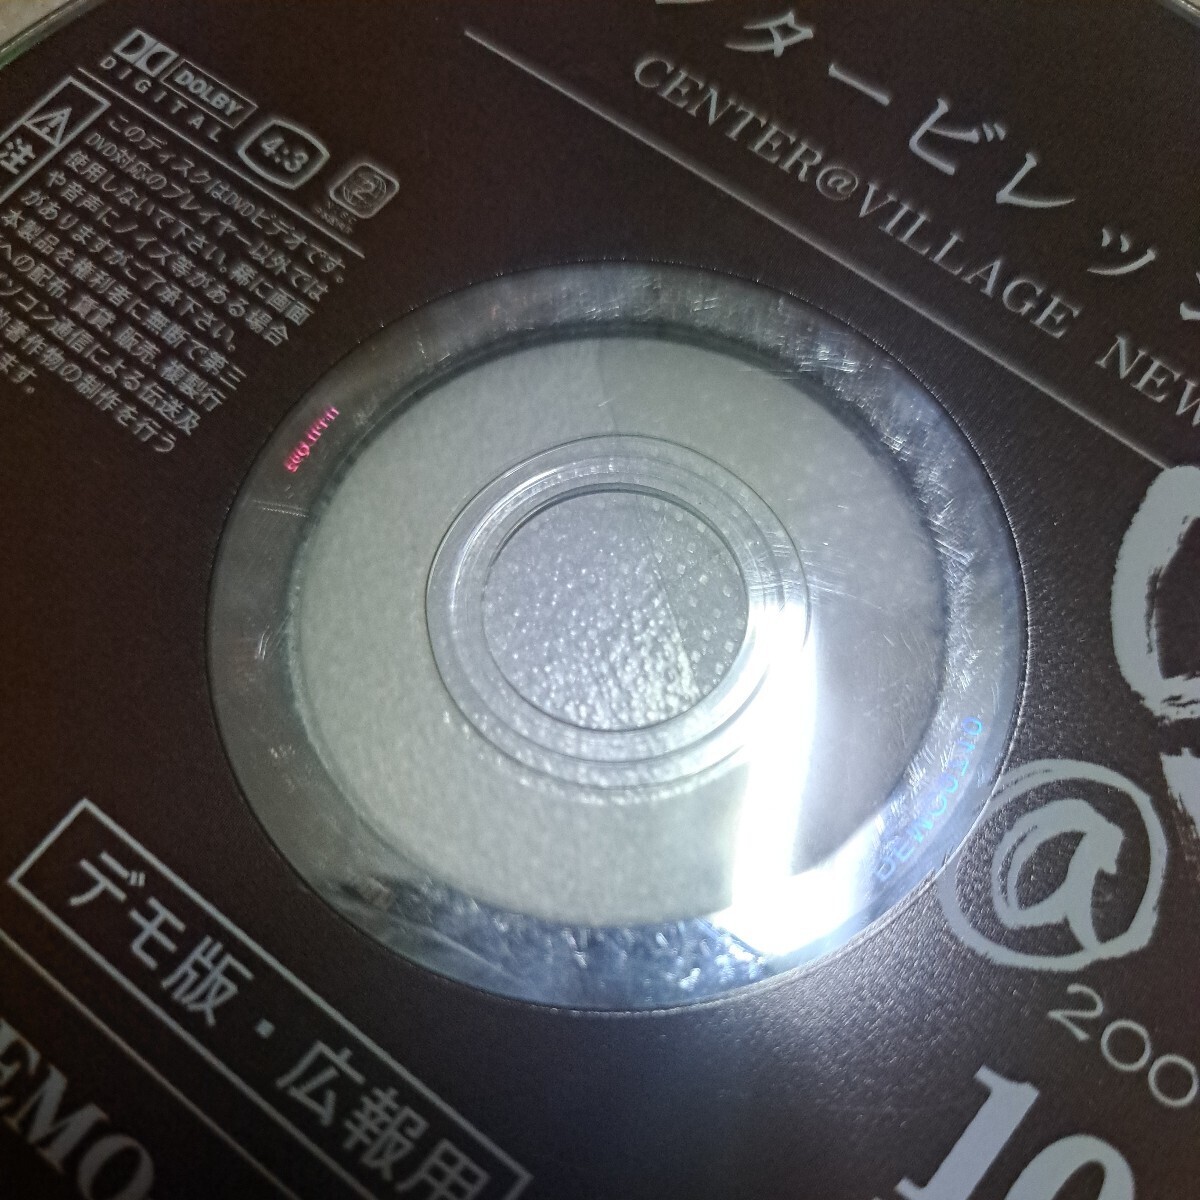  утиль центральный bireji газета 2007 год 10 месяц номер не продается demo версия широкий . для DVD диск только 